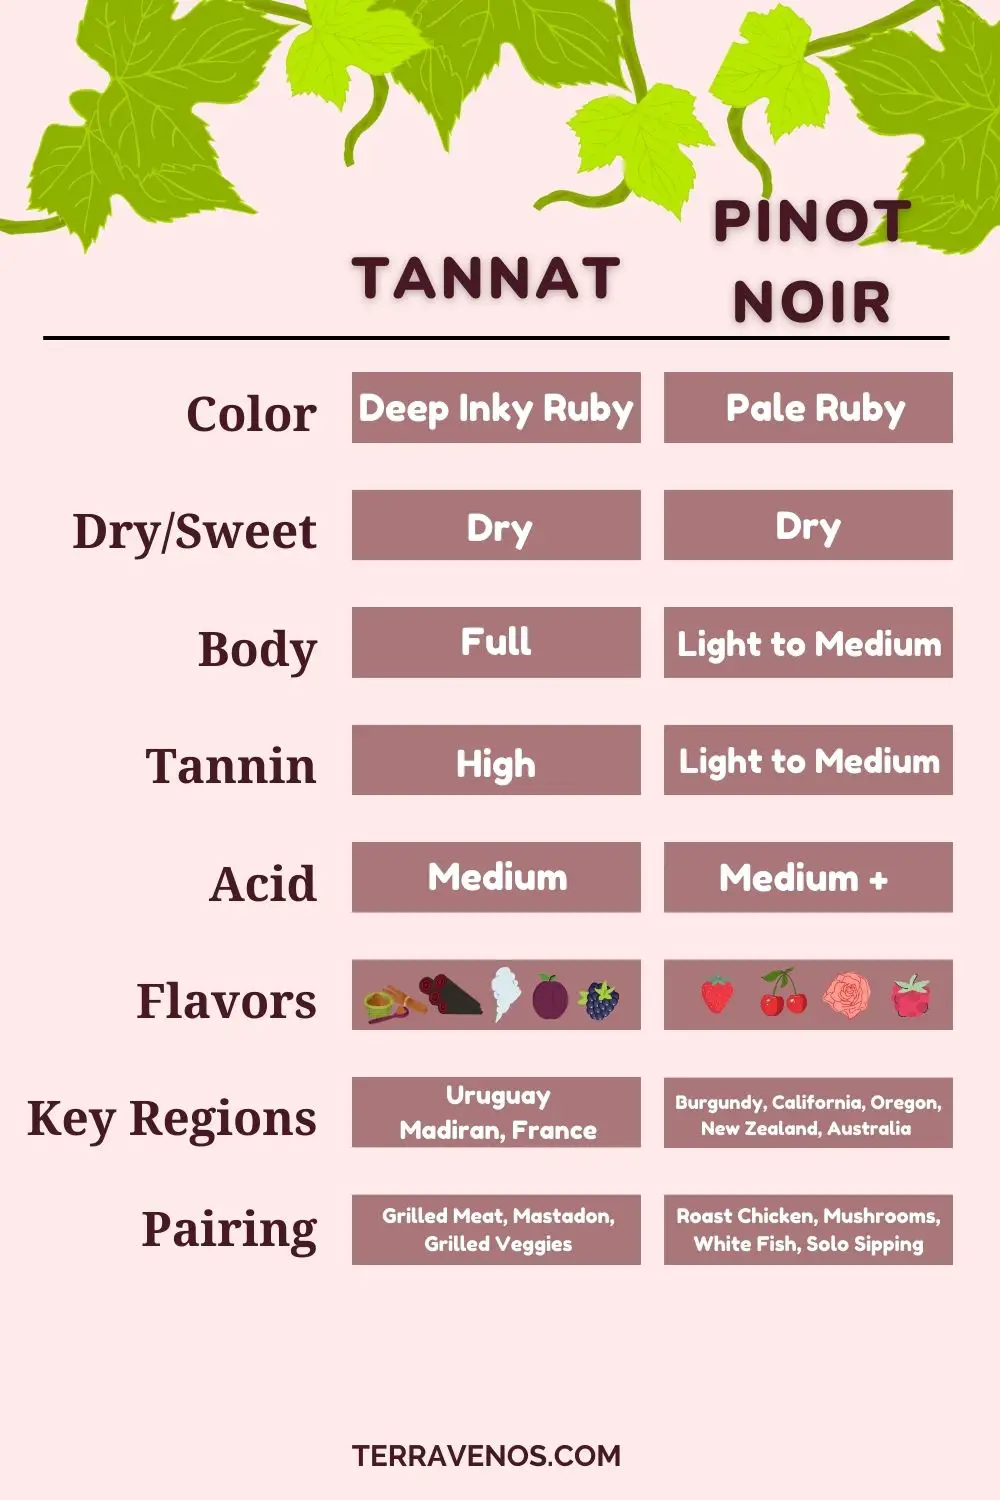 tannat-vs-pinot-noir-wine-comparison-infographic